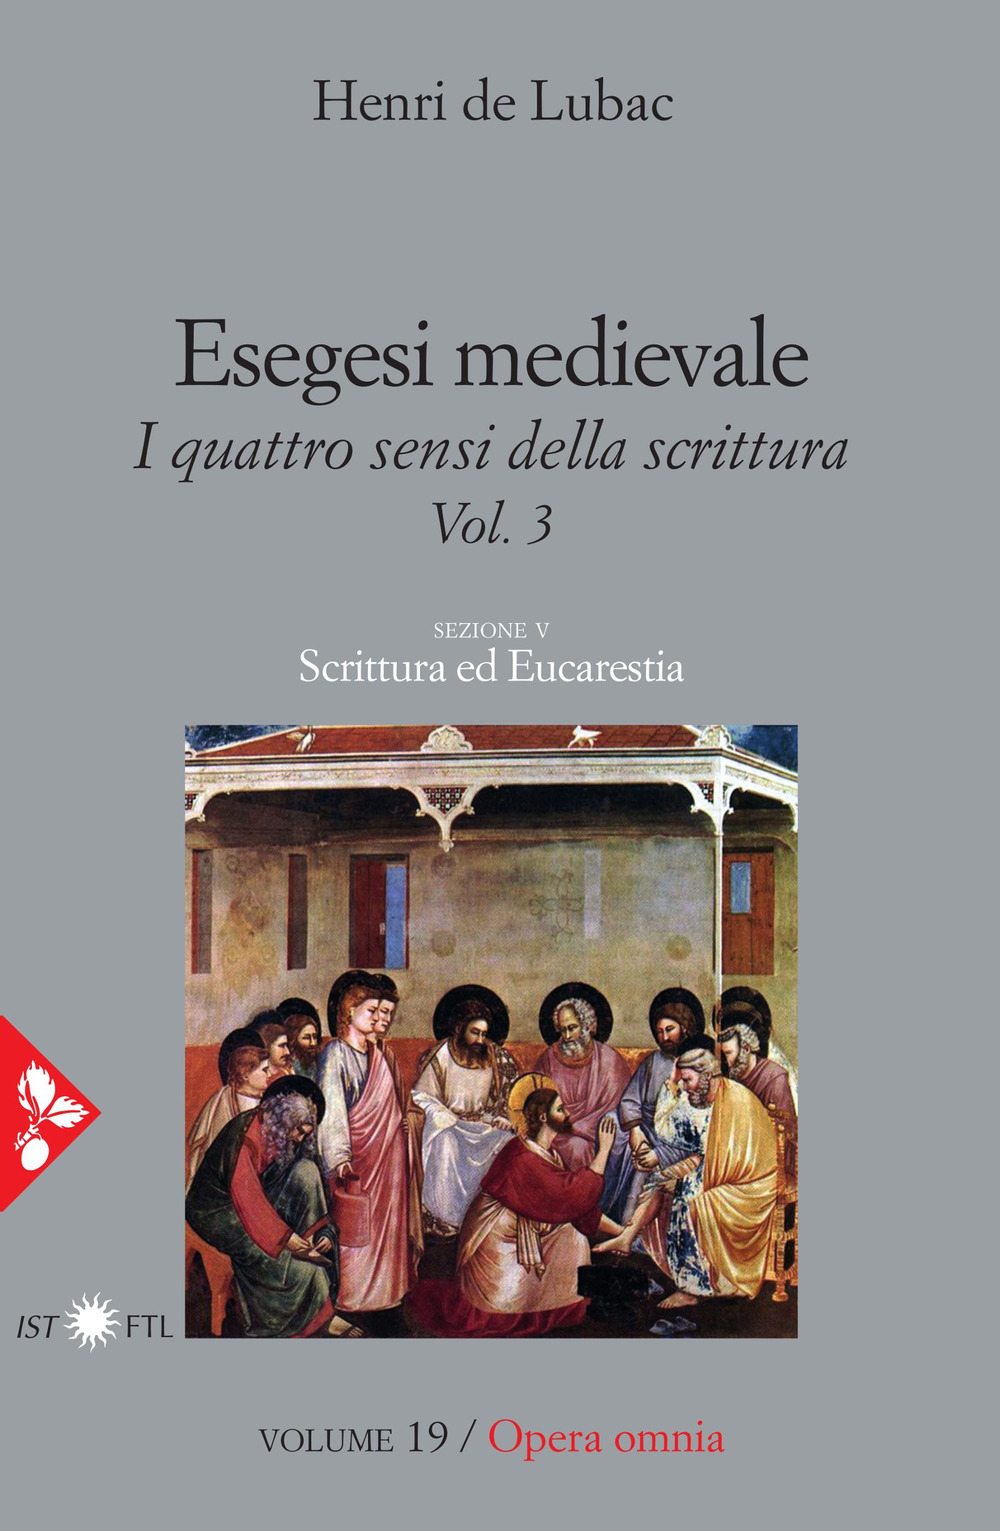 Opera omnia. Vol. 19: Esegesi medievale. Scrittura ed Eucarestia. I quattro sensi della scrittura. Vol. 3